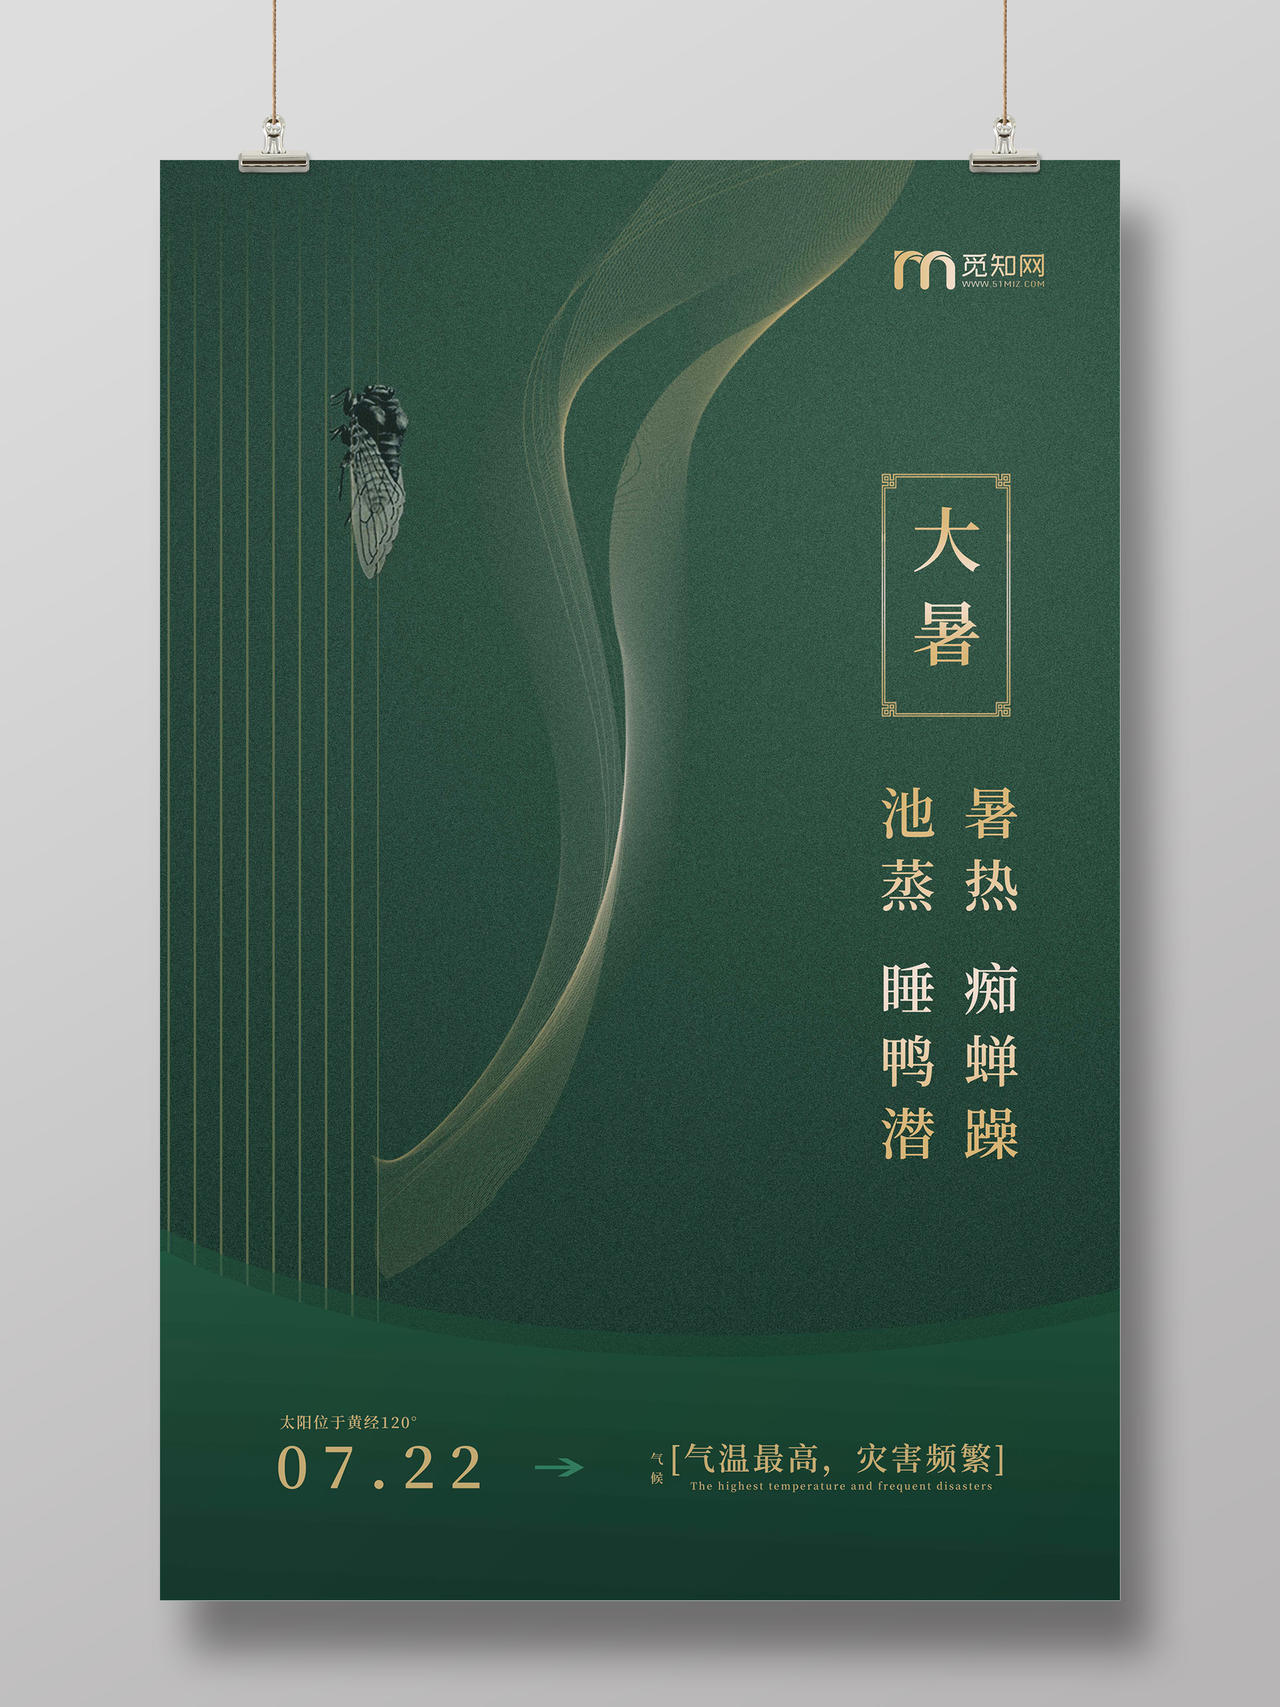 墨绿色极简风格中国二十四节气之大暑海报设计二十四节气大暑海报